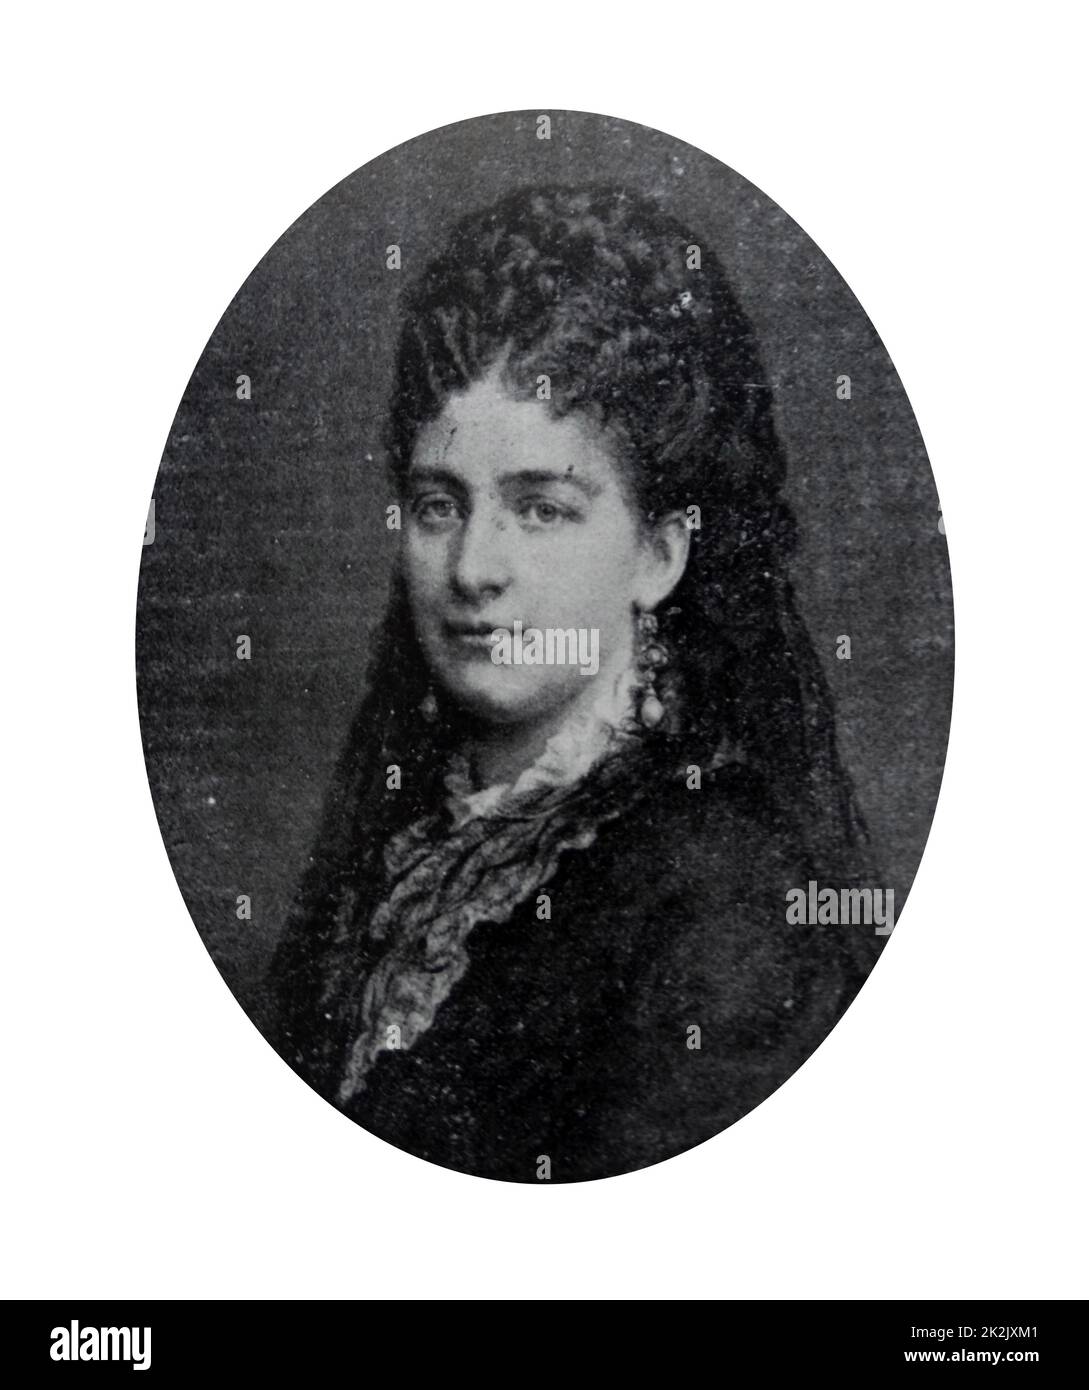 Maria Vittoria dal Pozzo (Maria Vittoria Carlotta Enrichetta; 9 août 1847 ñ 8 novembre 1876). La noble italienne et était la princesse della Cisterna en son propre droit. Mariée à Amedeo de Savoie, duc d'Aoste, elle fut plus tard la reine d'Espagne de 1870 jusqu'à l'abdication de son mari en 1873. Banque D'Images